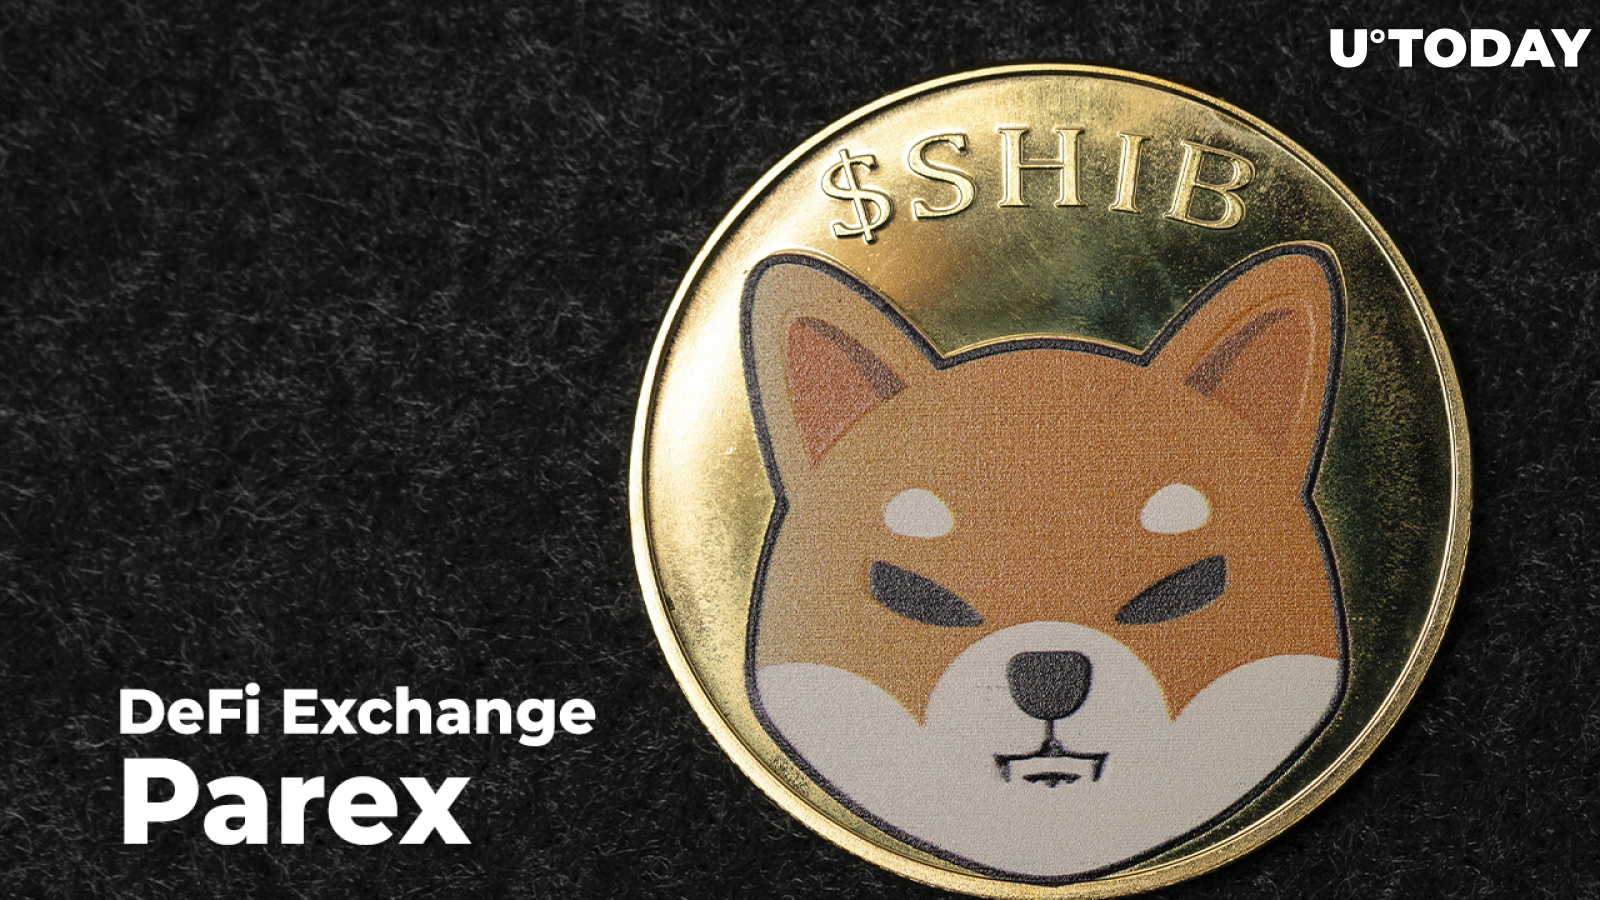 SHIB to List on DeFi Exchange Parex Tomorrow